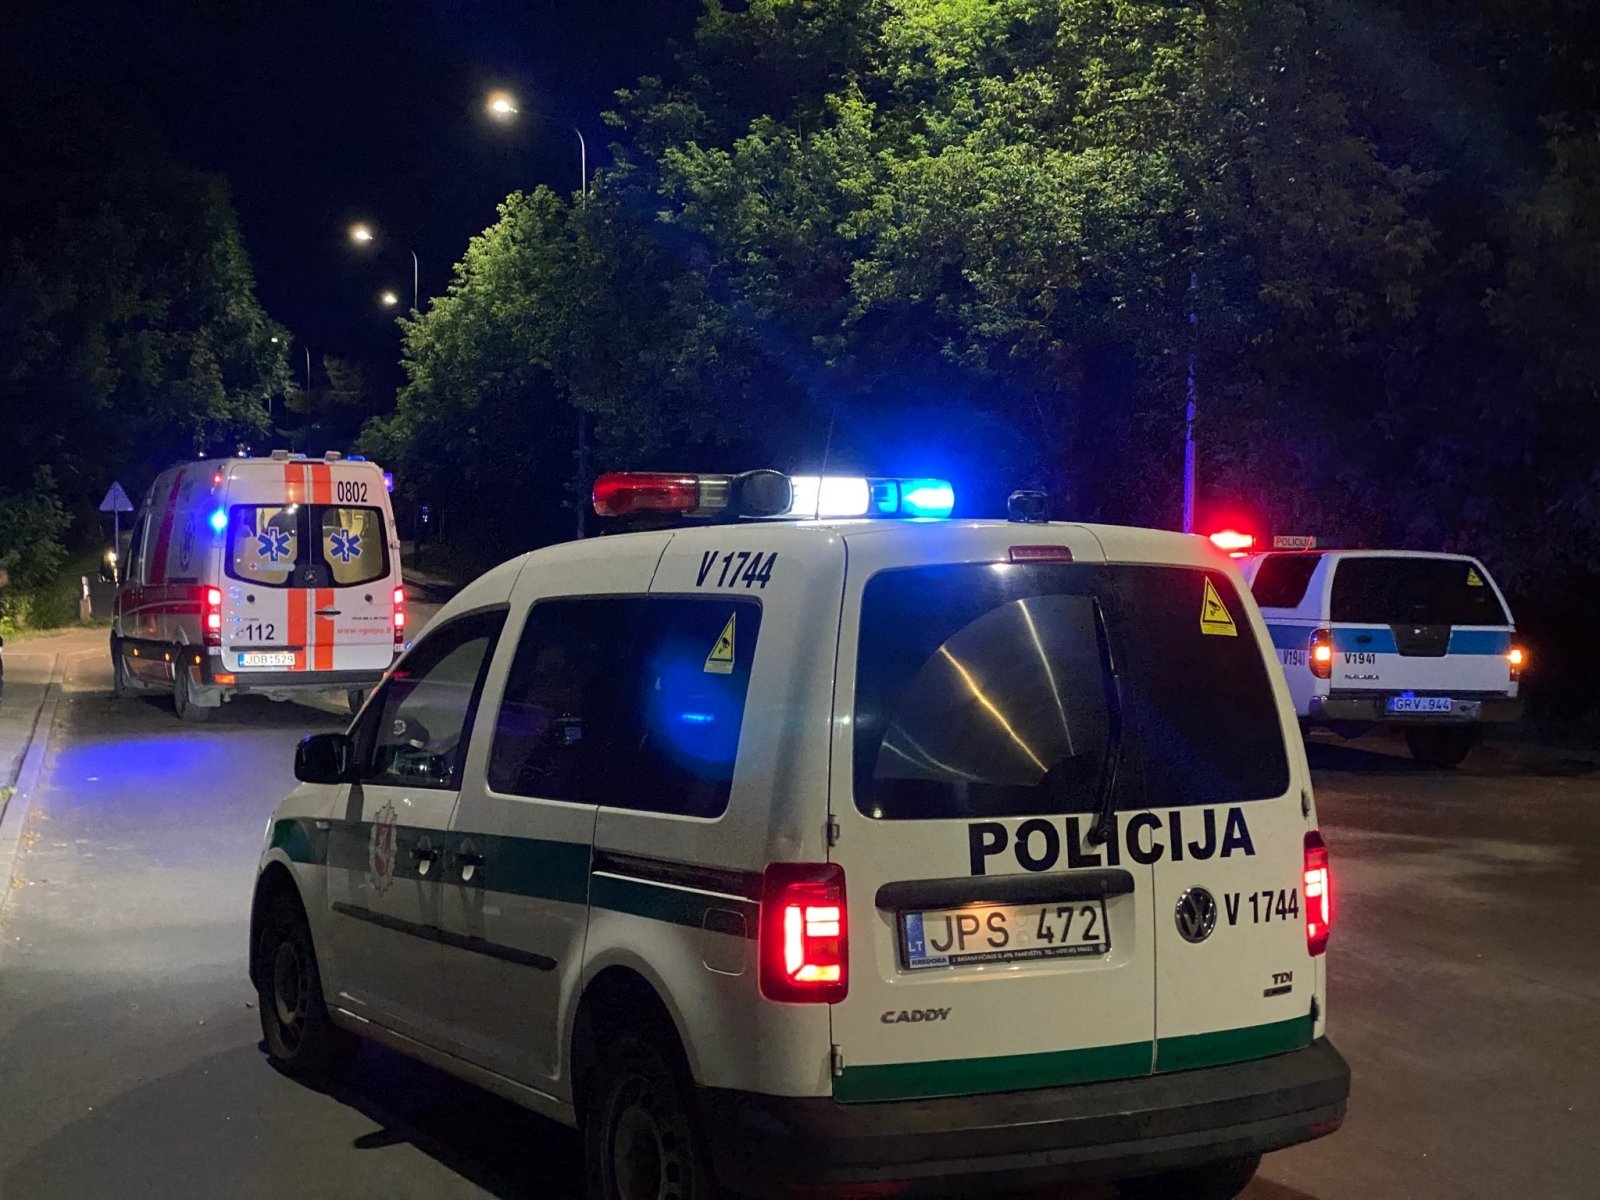 Vilniaus pakraštyje esančiame miške, automobilyje, rastas negyvas vyras su šautine žaizda